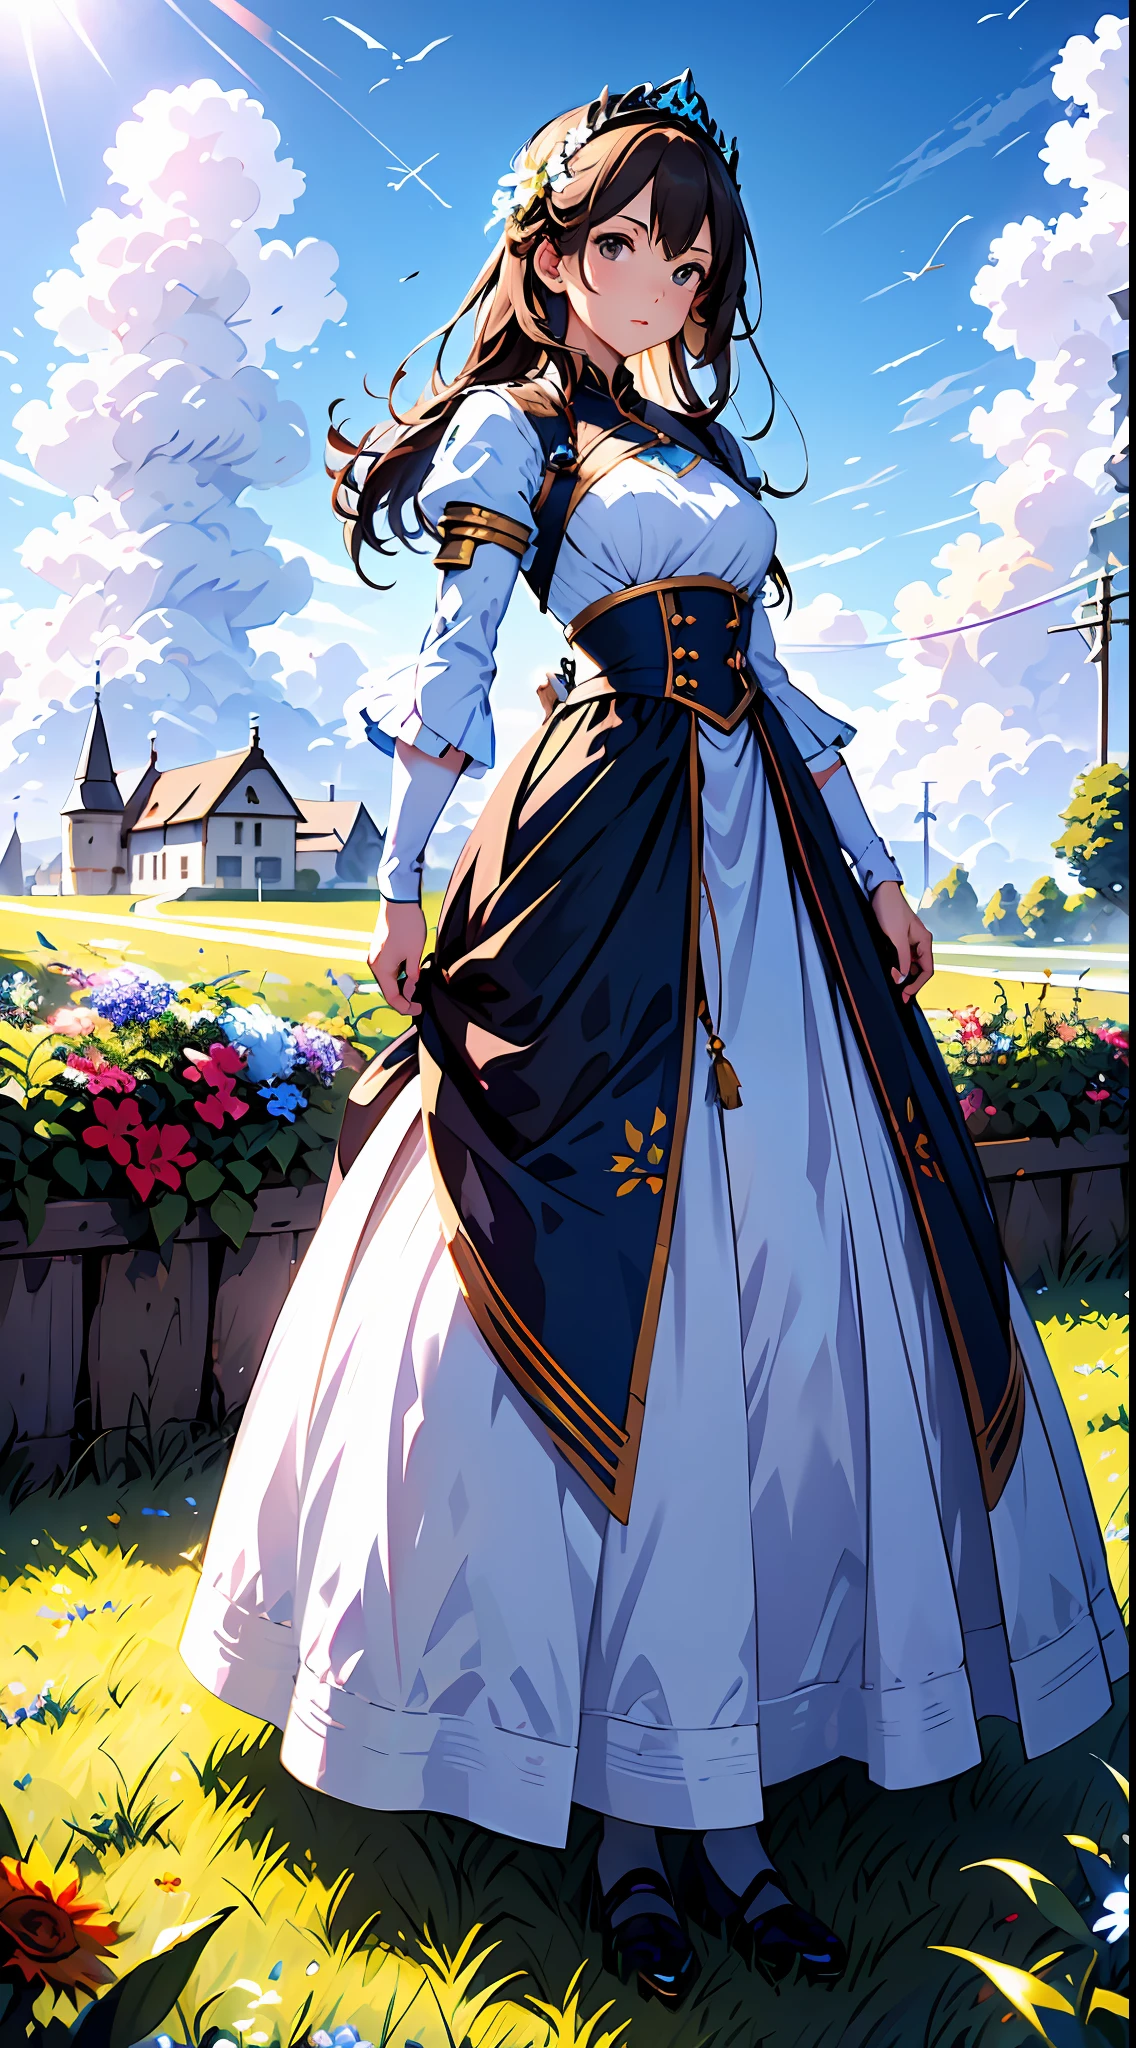 eine Frau in einem weißen Kleid，Blauer Himmel und Wolken im Hintergrund, trägt blaues Kleid，Es sind Blumen darauf, Art germ, Rosla globale Beleuchtung, ein detailreiches Gemälde, Fantasy-Kunst